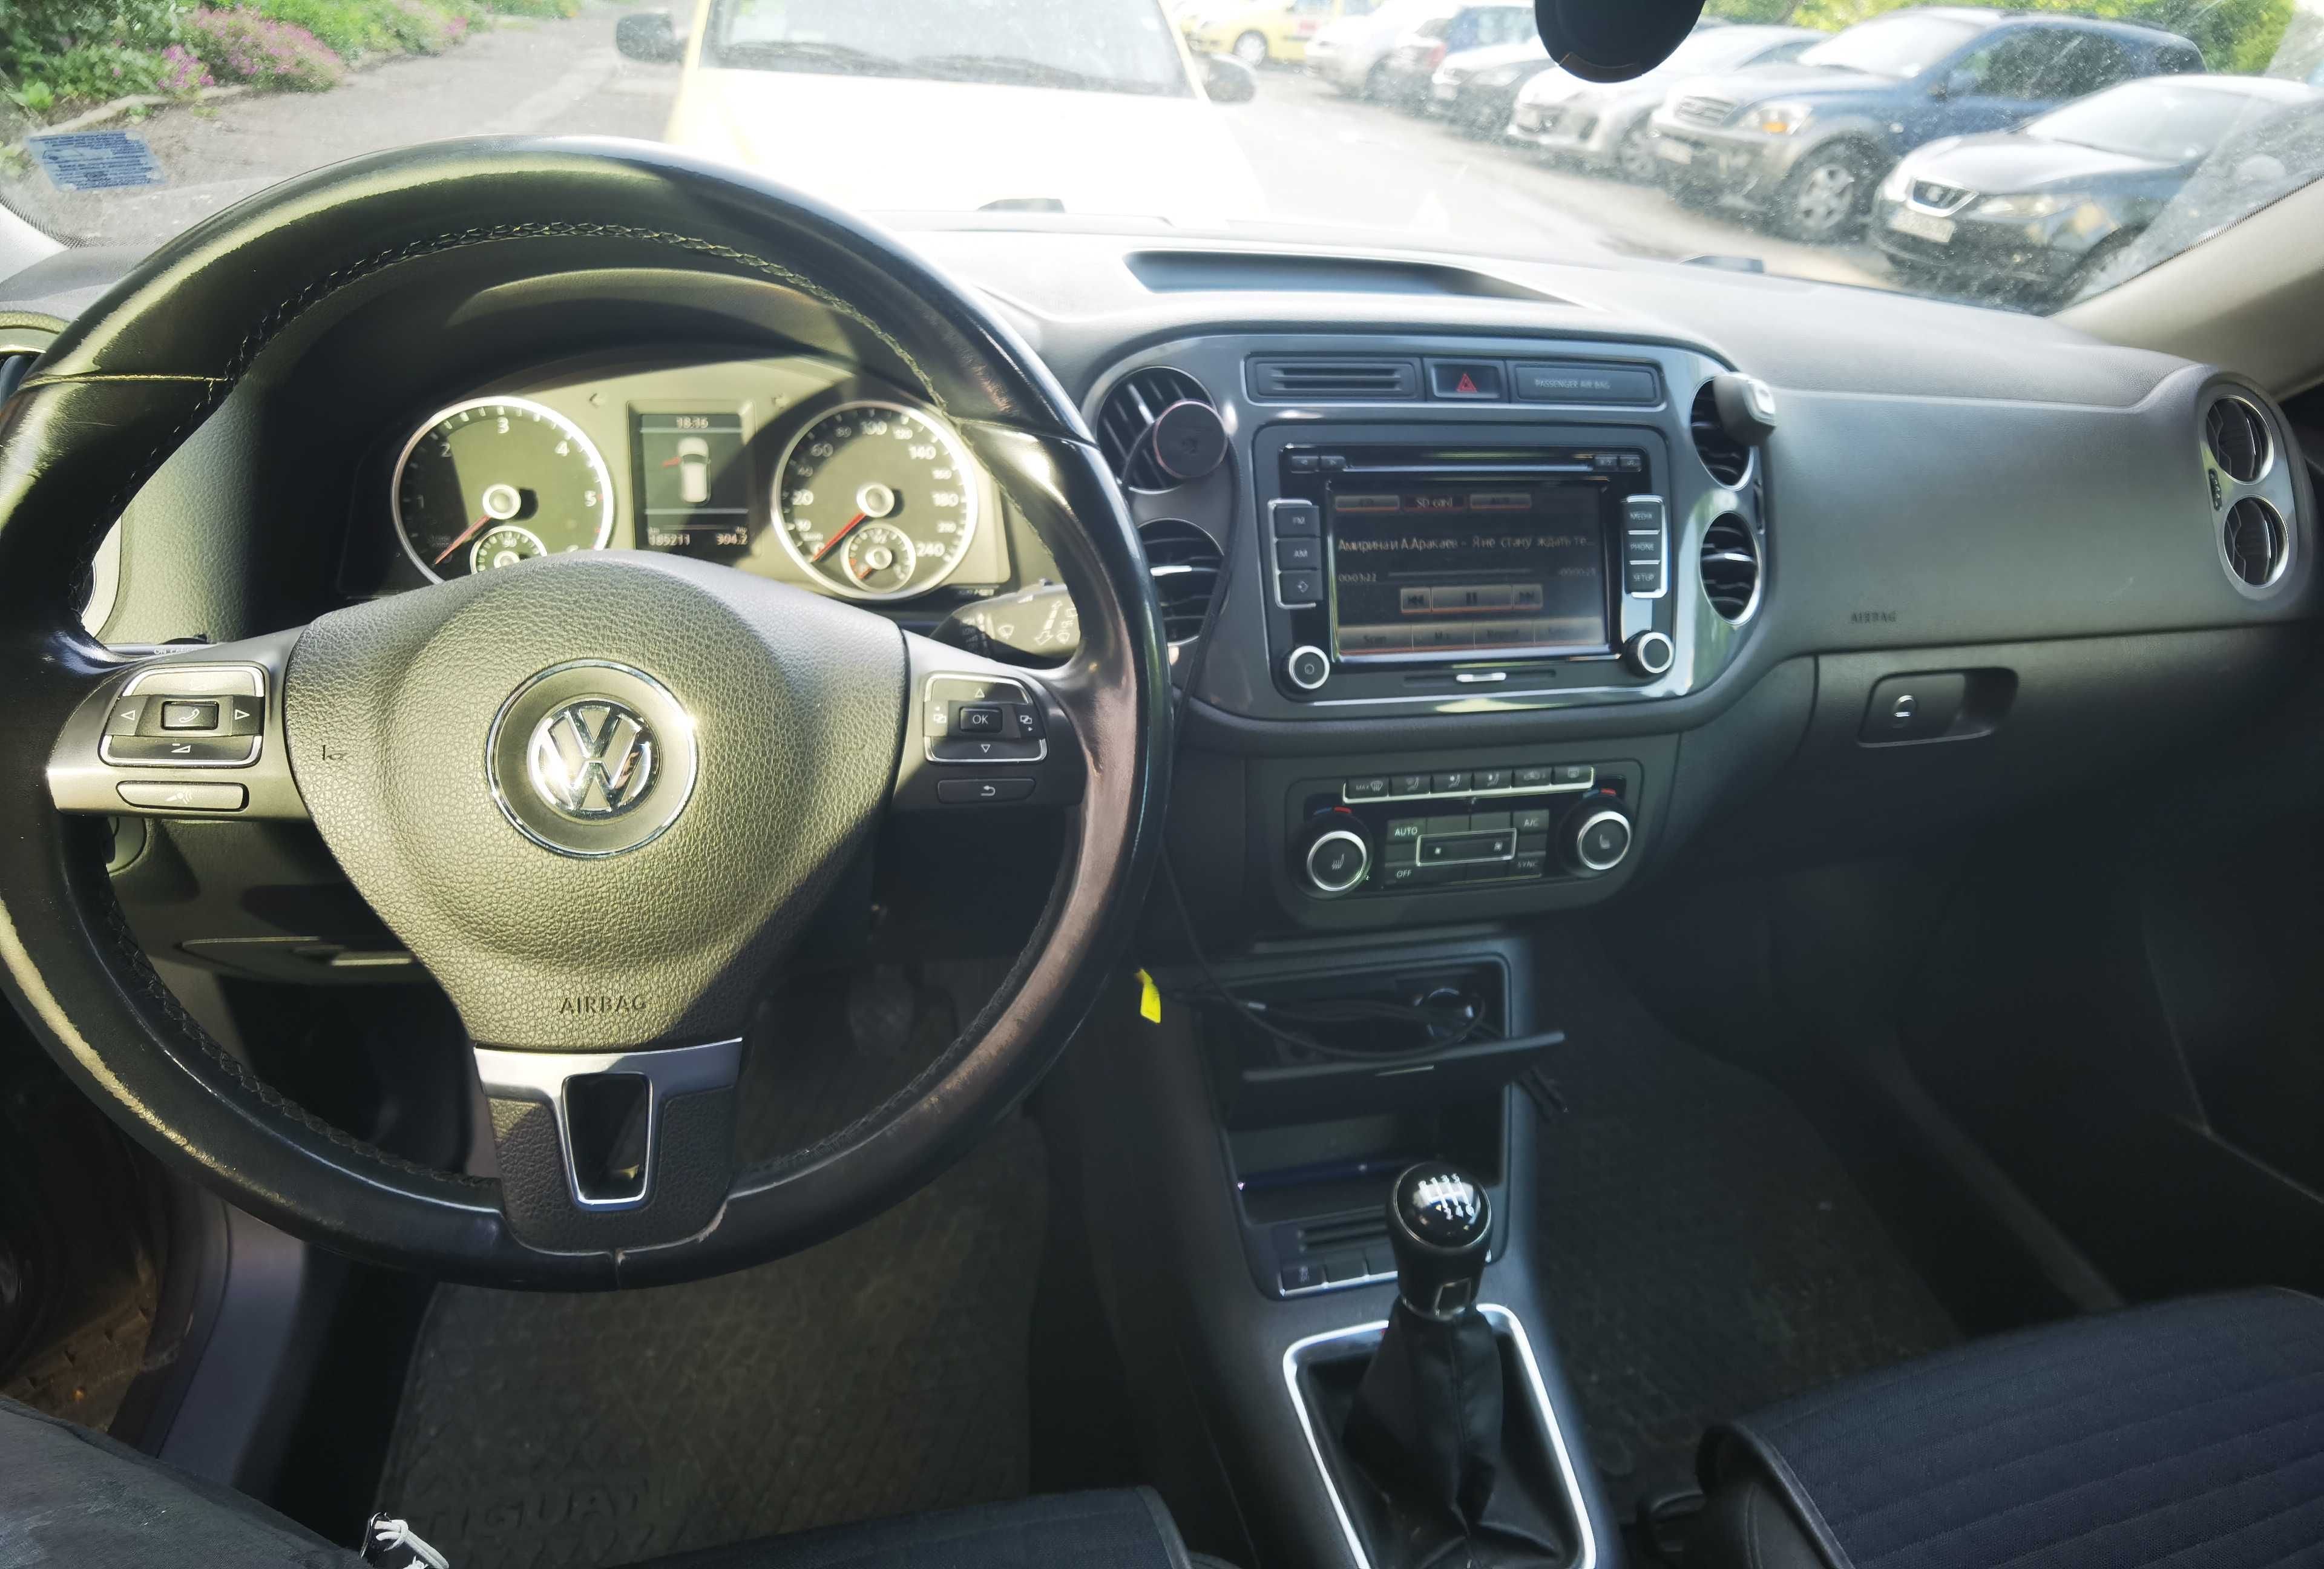 VW Tiguan 2.0 Diesel 140 Hp 4 Motion